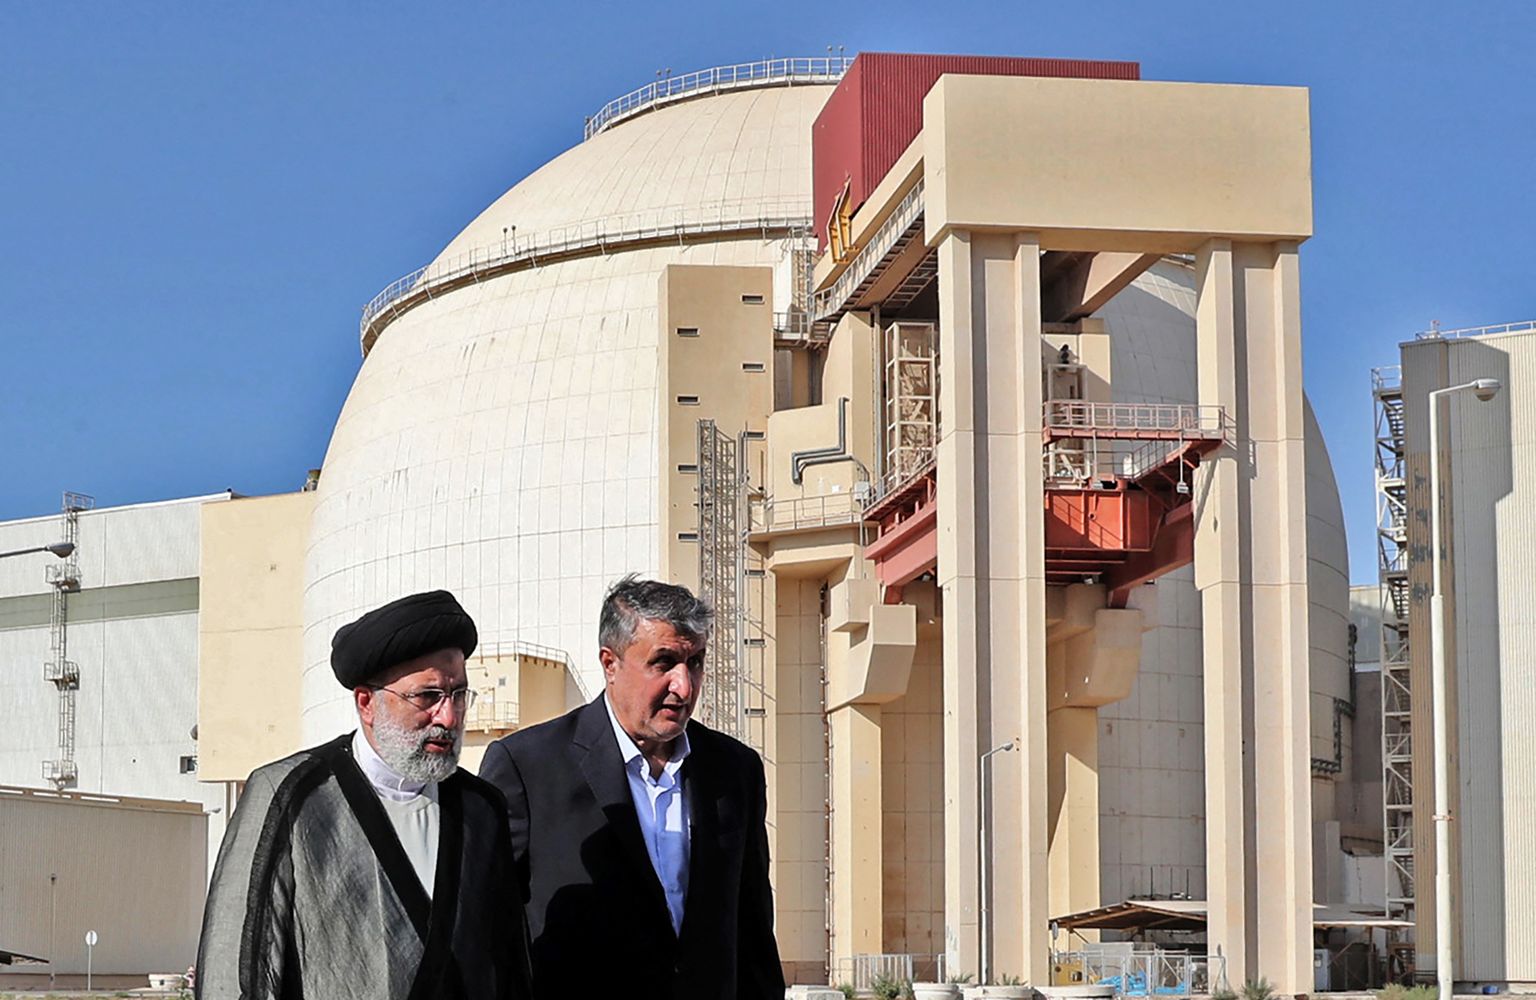 Iraani president Ebrahim Raisi ja Iraani aatomienergiaagentuuri juht Mohammad Eslami külastamas Bushehri tuumajaama. Foto on illustratiivne.